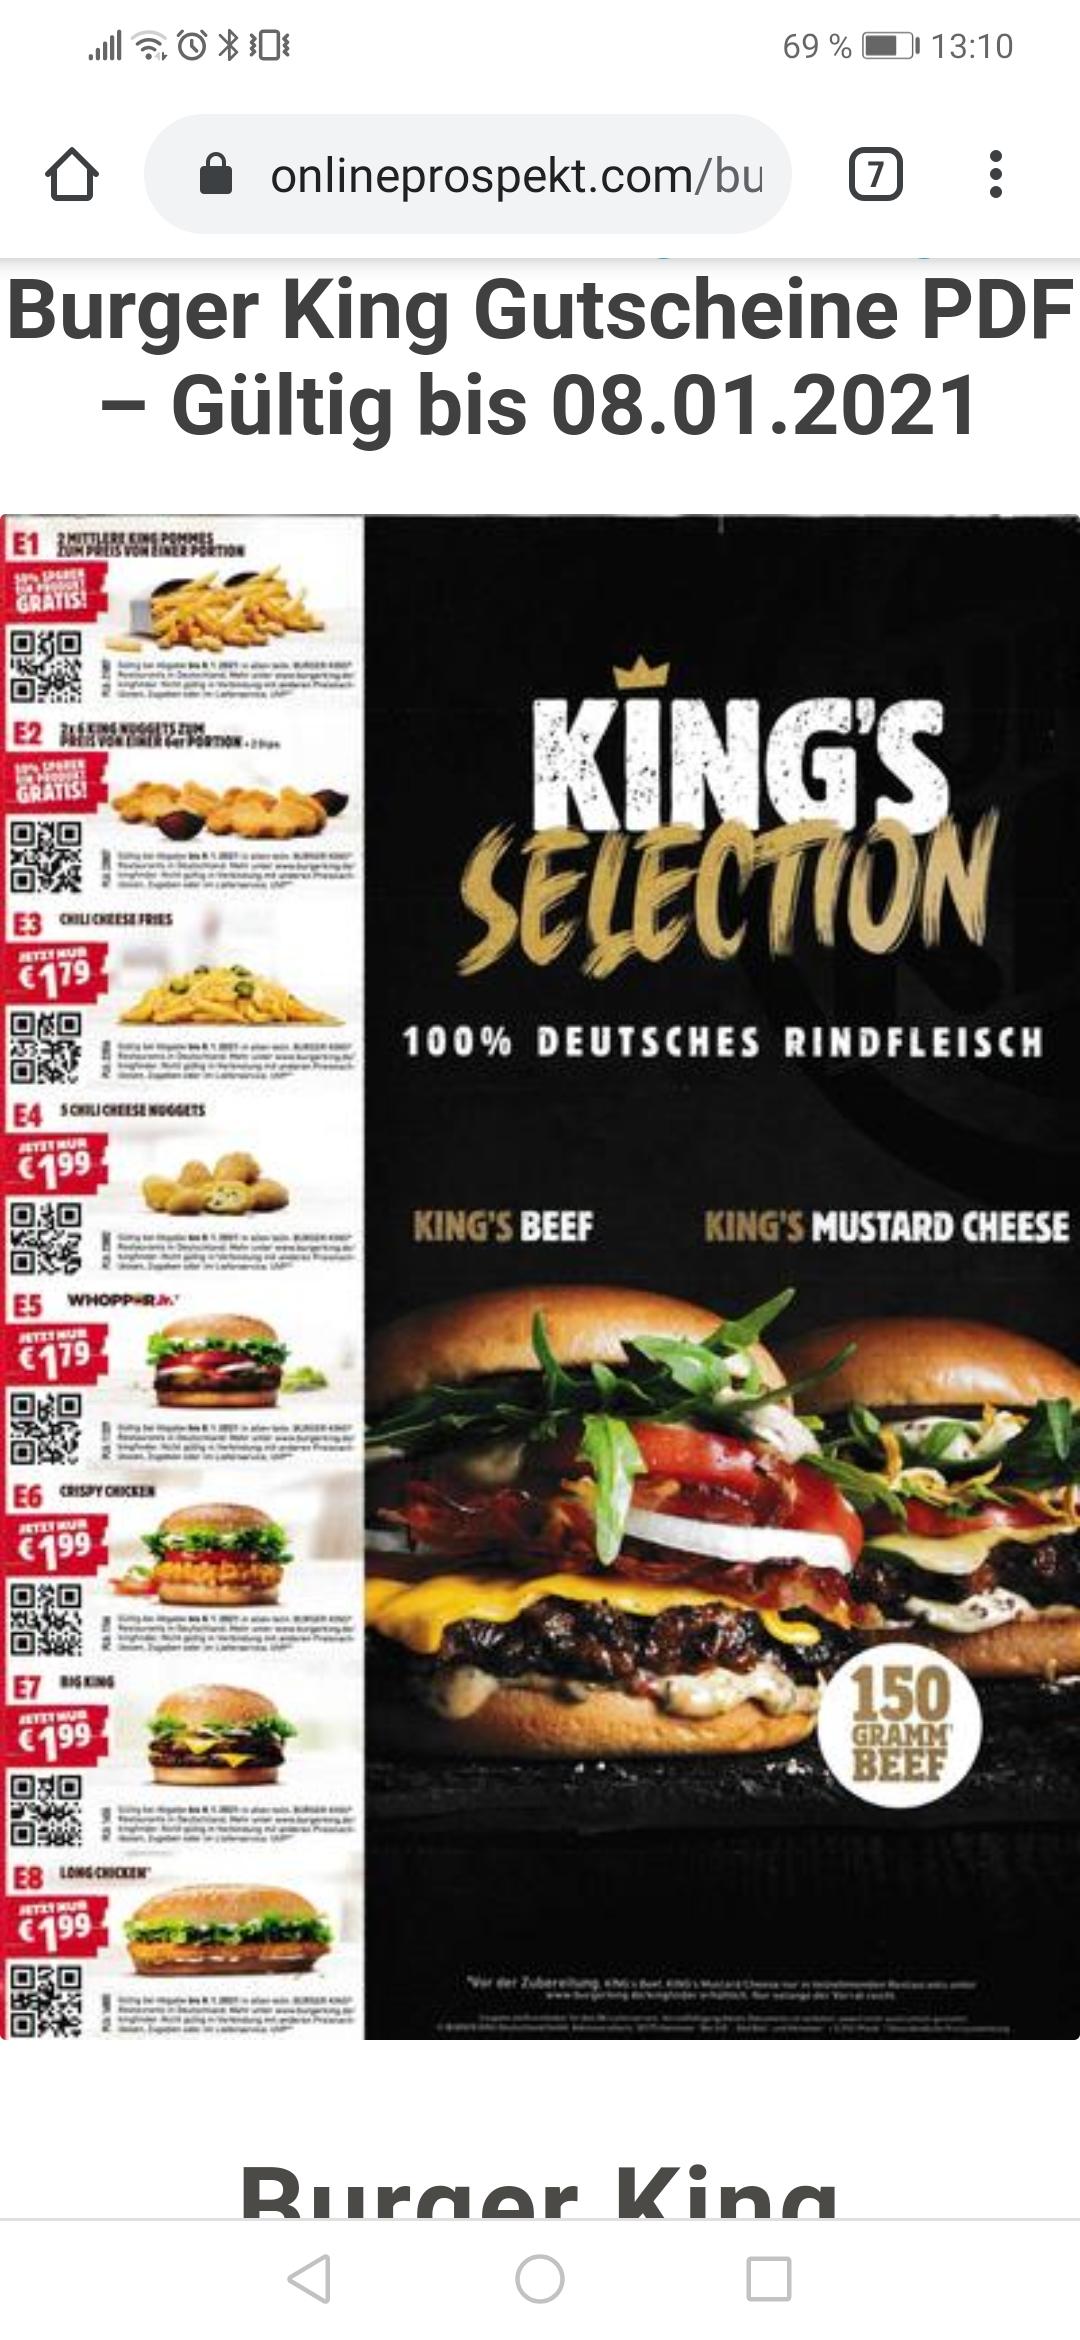 Bürger King Gutschein als PDF am Handy gültig? (essen, Burger king)